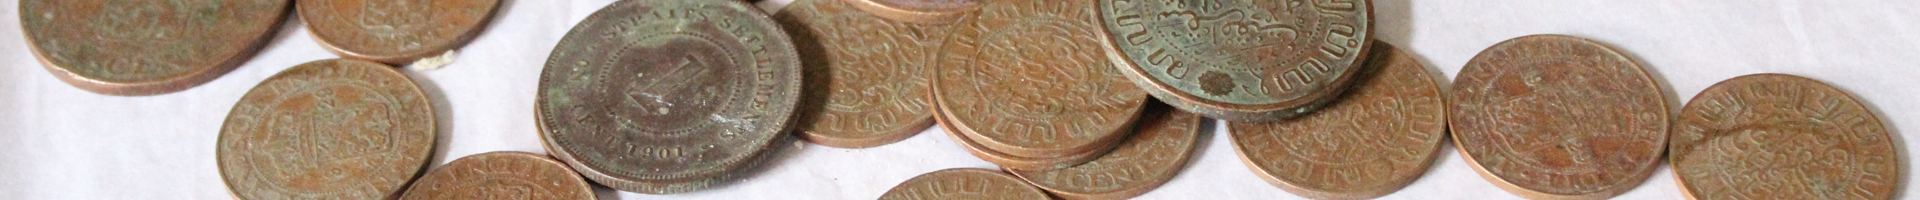 Заголовочное изображение страницы акционеров - Датские серебряные колониальные монеты, датируемые 1871-м - 1872-м годами, найдены в округе Большой Ачех провинции Ачех в Индонезии